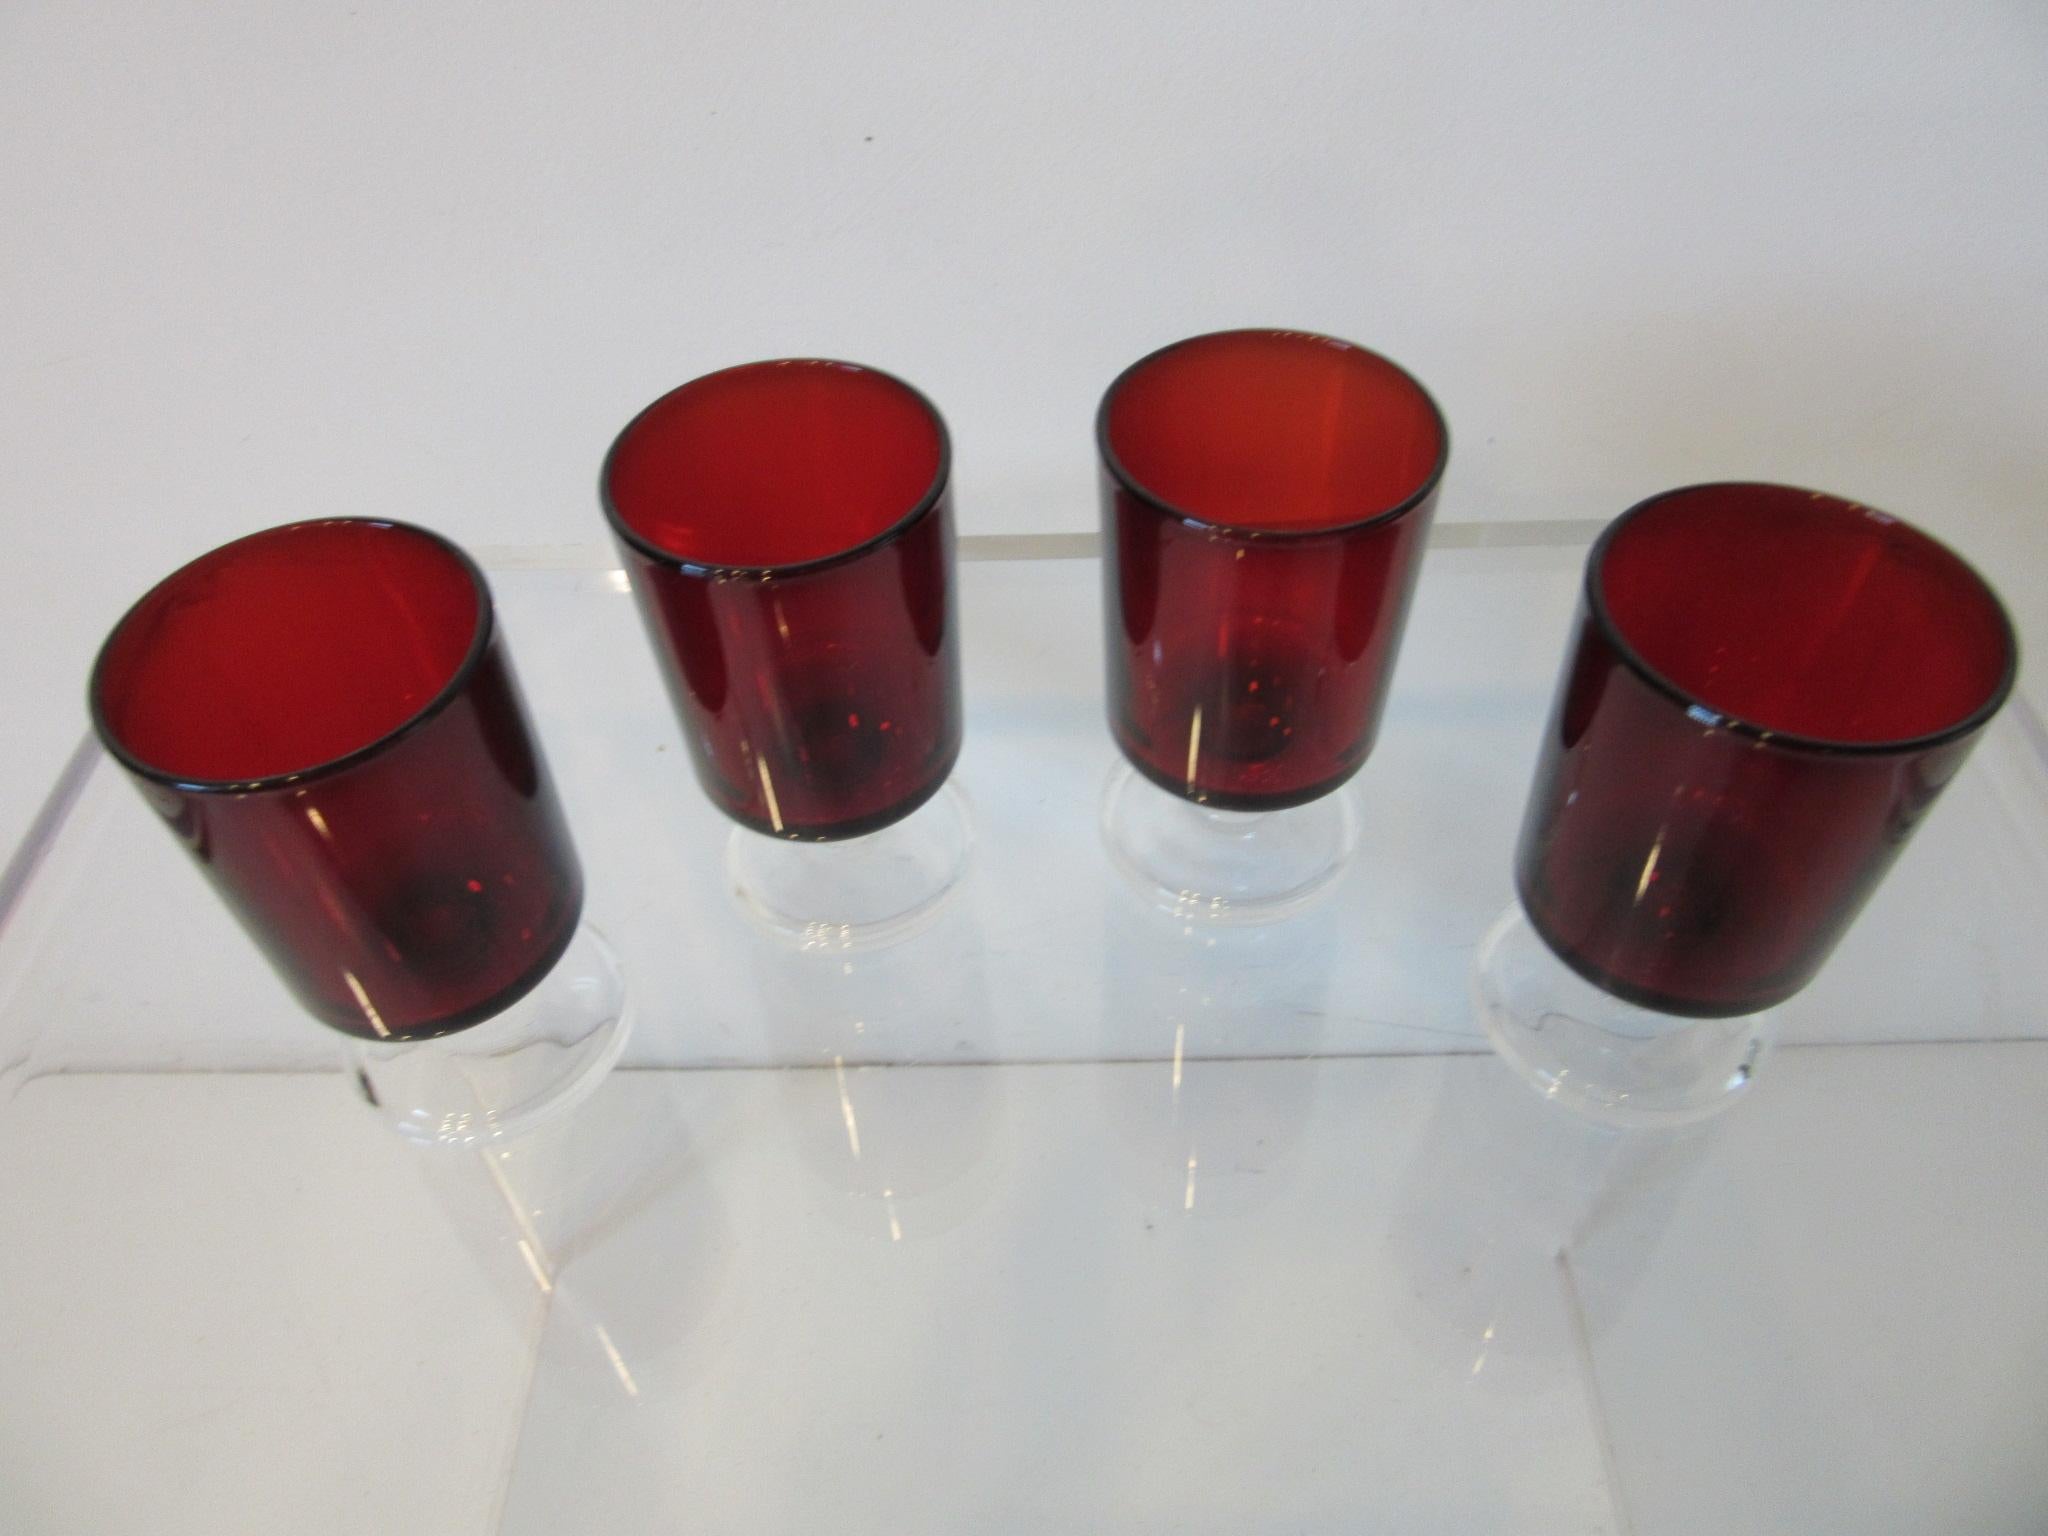 Un ensemble de quatre verres à liqueur à pied transparent et de couleur rouge rubis profond de la marque Arcoroc, parfaits pour compléter l'ensemble de verres à liqueur ou pour votre bar. Estampillé made in France au bas des verres et conçu par J.G